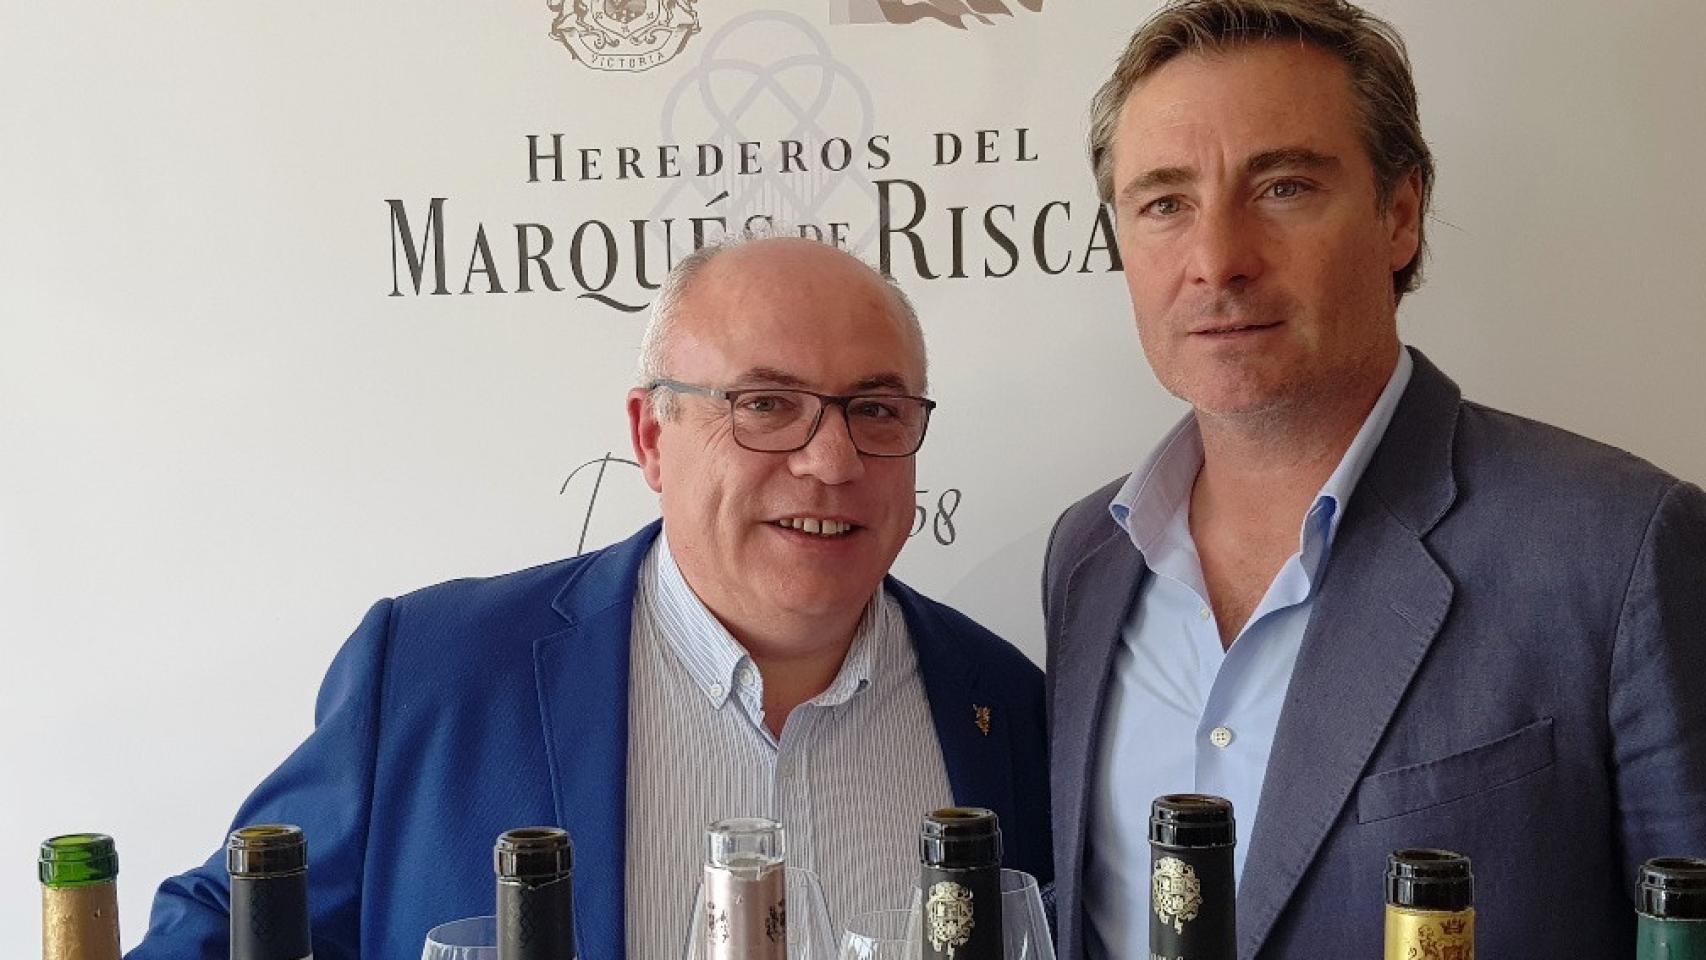 Luis Hurtado y Miguel Angel Benito autores de la cata de vinos que ha resultado extraordinaria